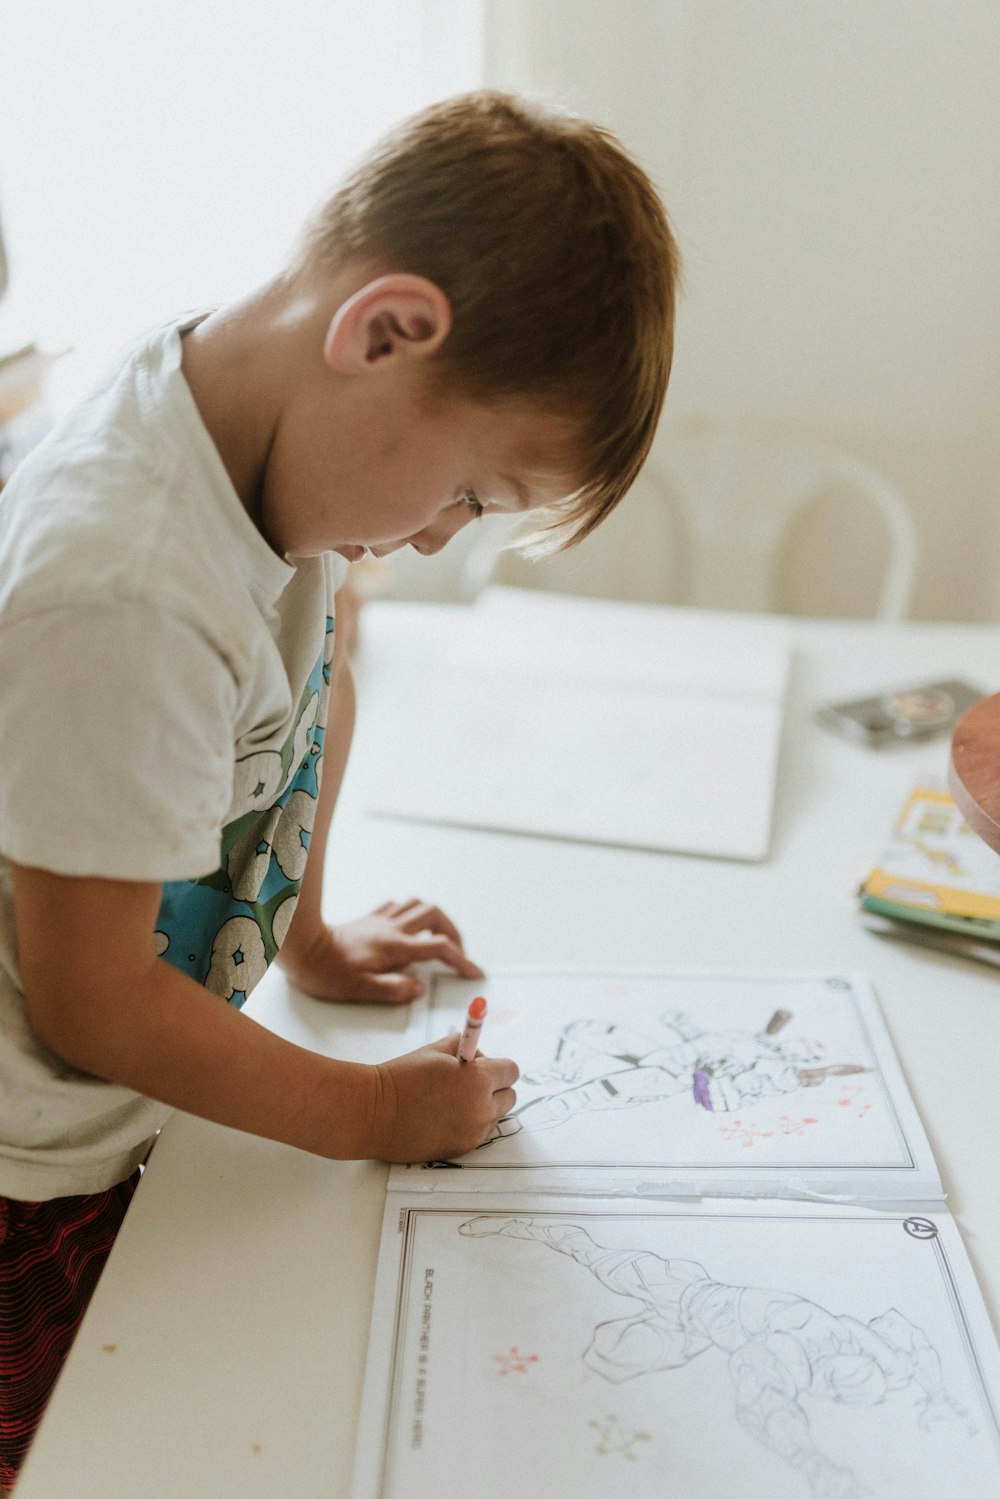 Un niño dibujando en una pizarra blanca